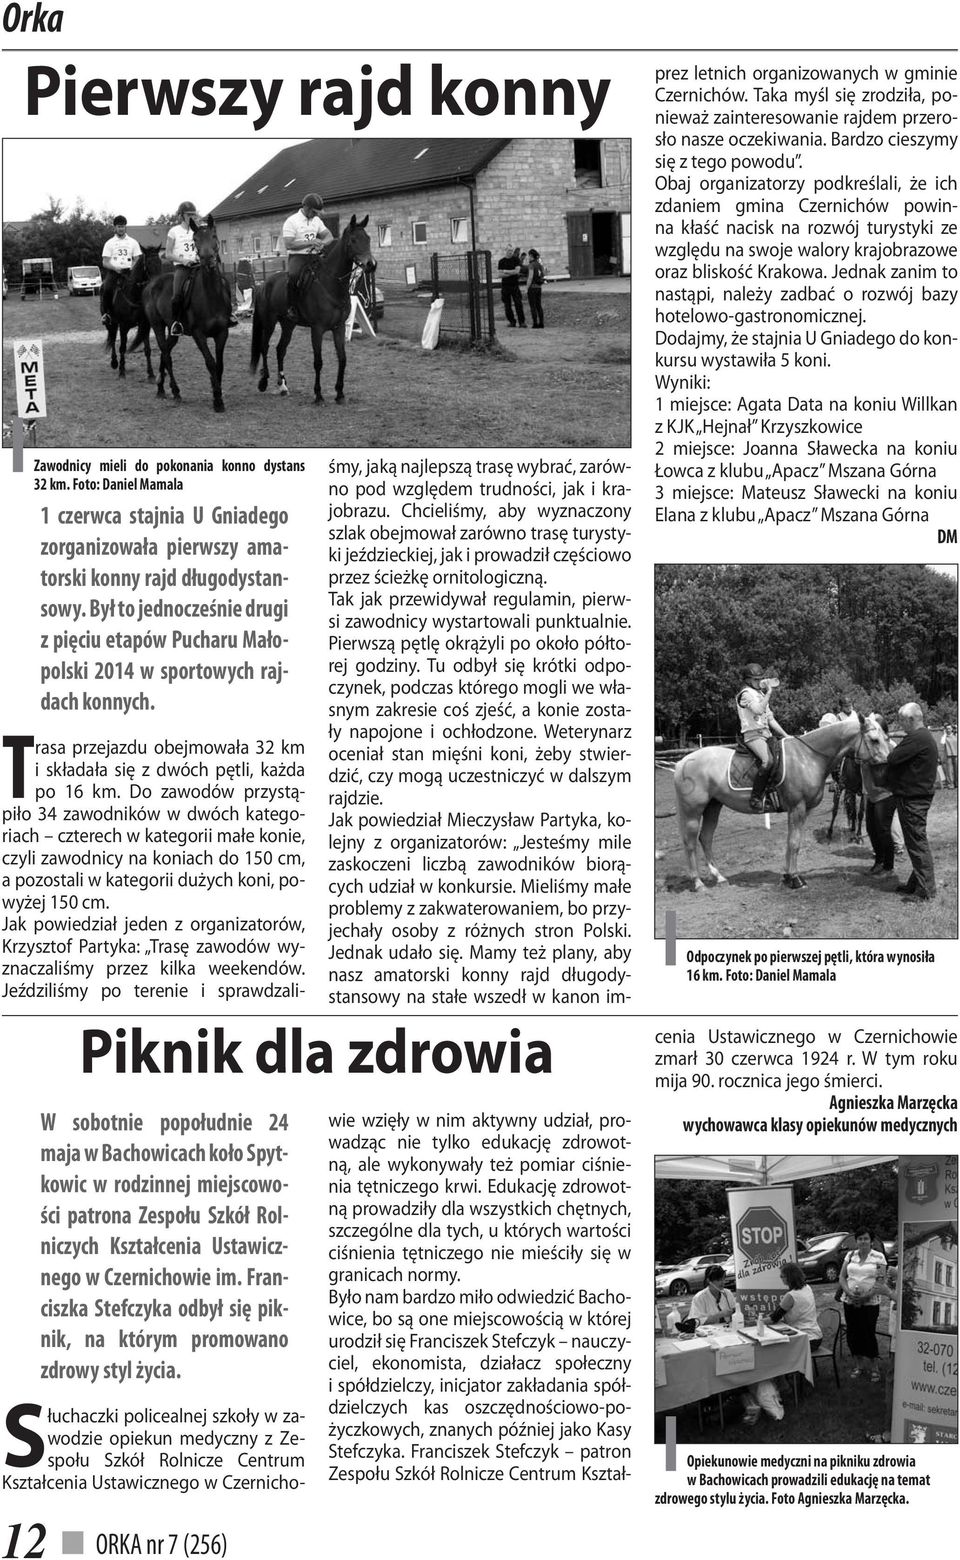 ORKA nr 7 (256) Piknik dla zdrowia W sobotnie popołudnie 24 maja w Bachowicach koło Spytkowic w rodzinnej miejscowości patrona Zespołu Szkół Rolniczych Kształcenia Ustawicznego w Czernichowie im.